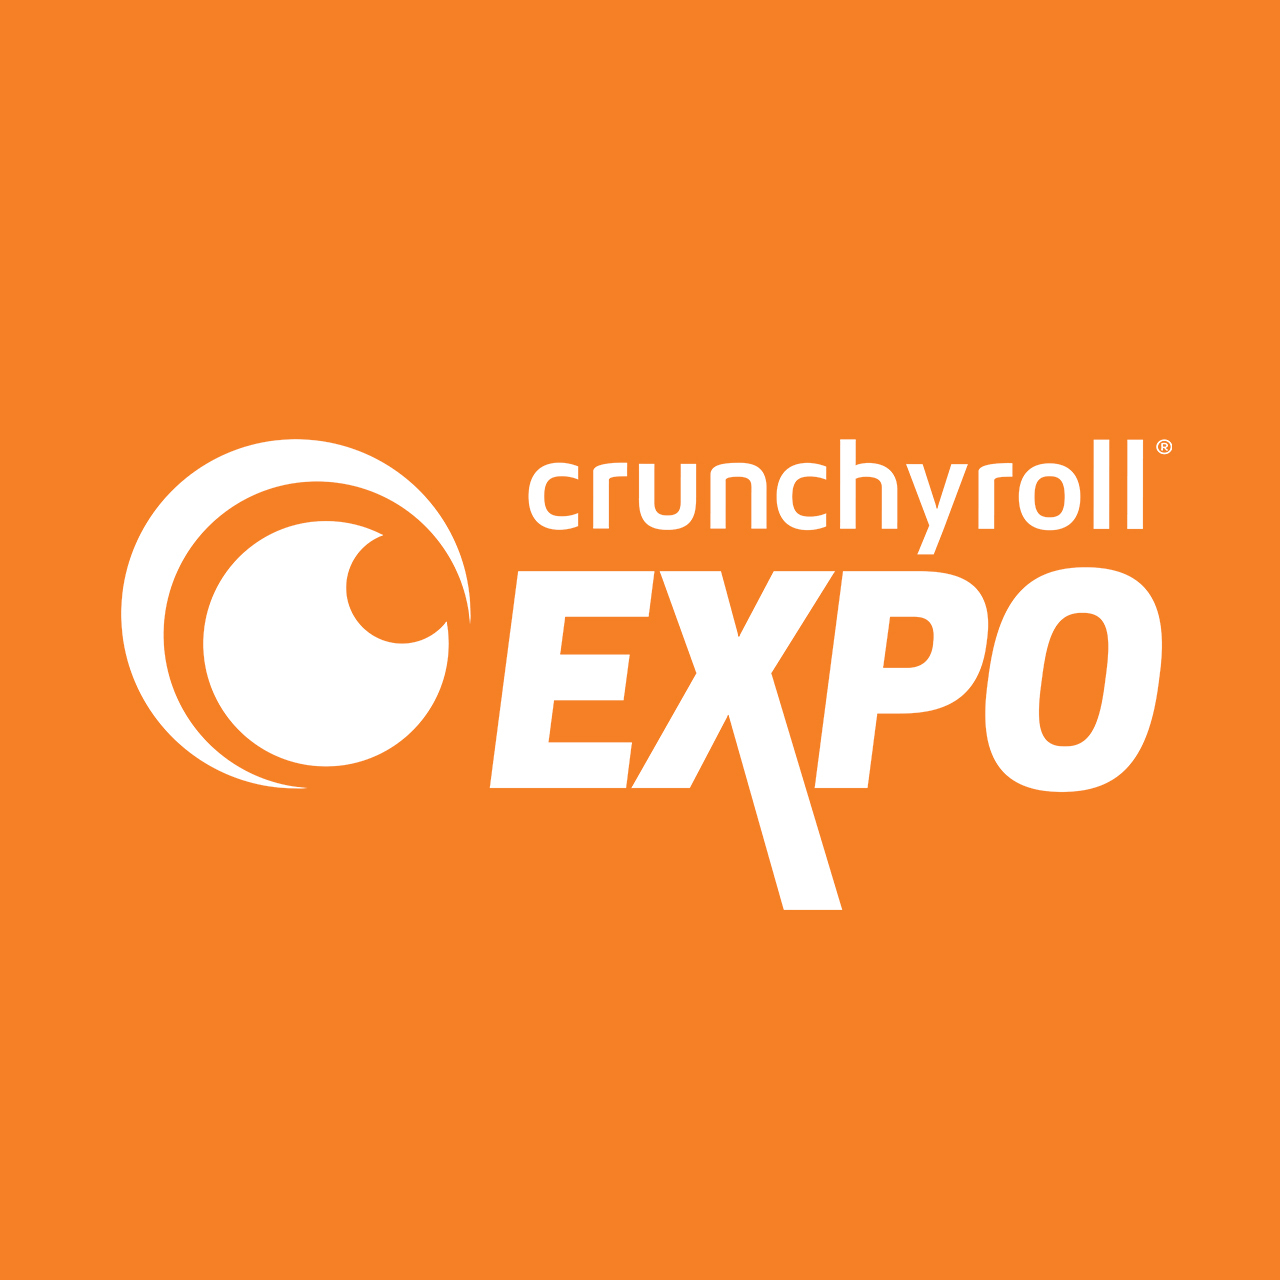 Crunchyroll apresenta novos planos de assinatura - Crunchyroll